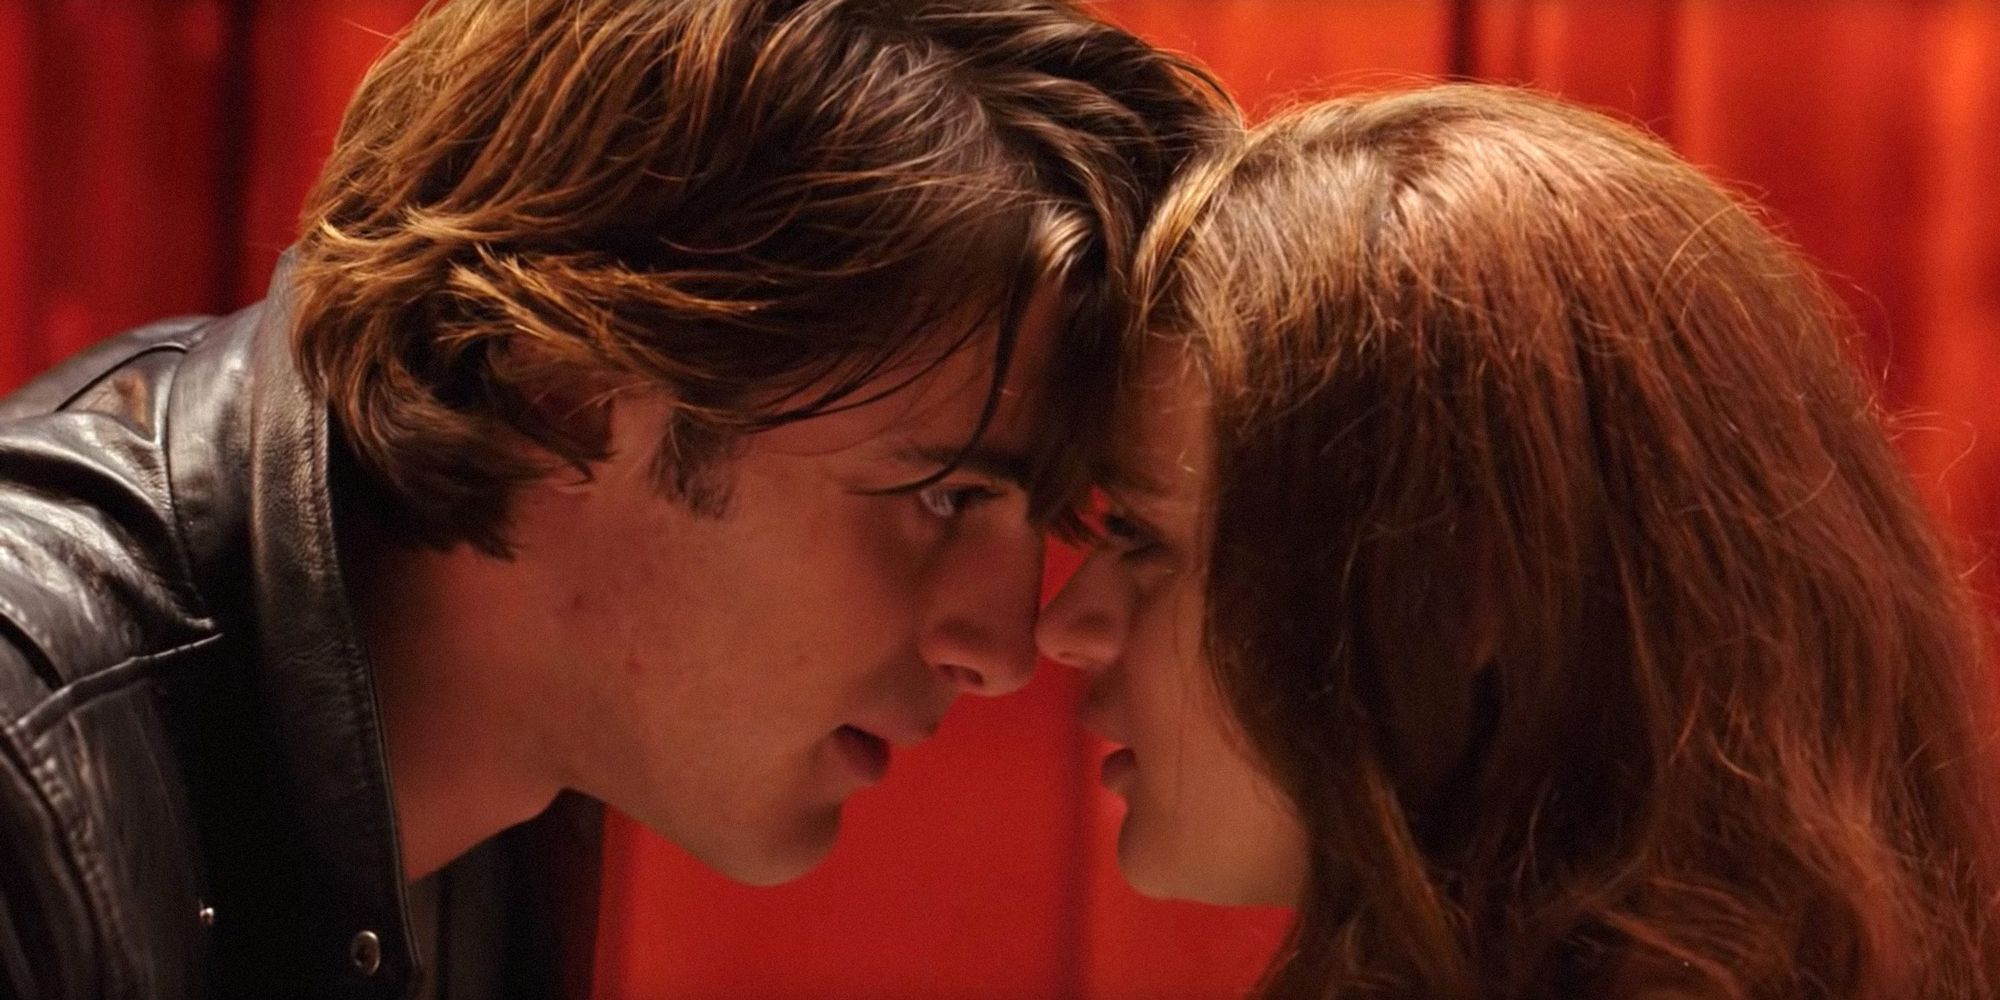 “Esas películas son ridículas”: Jacob Elordi reflexiona sin rodeos sobre las películas de La cabina de los besos